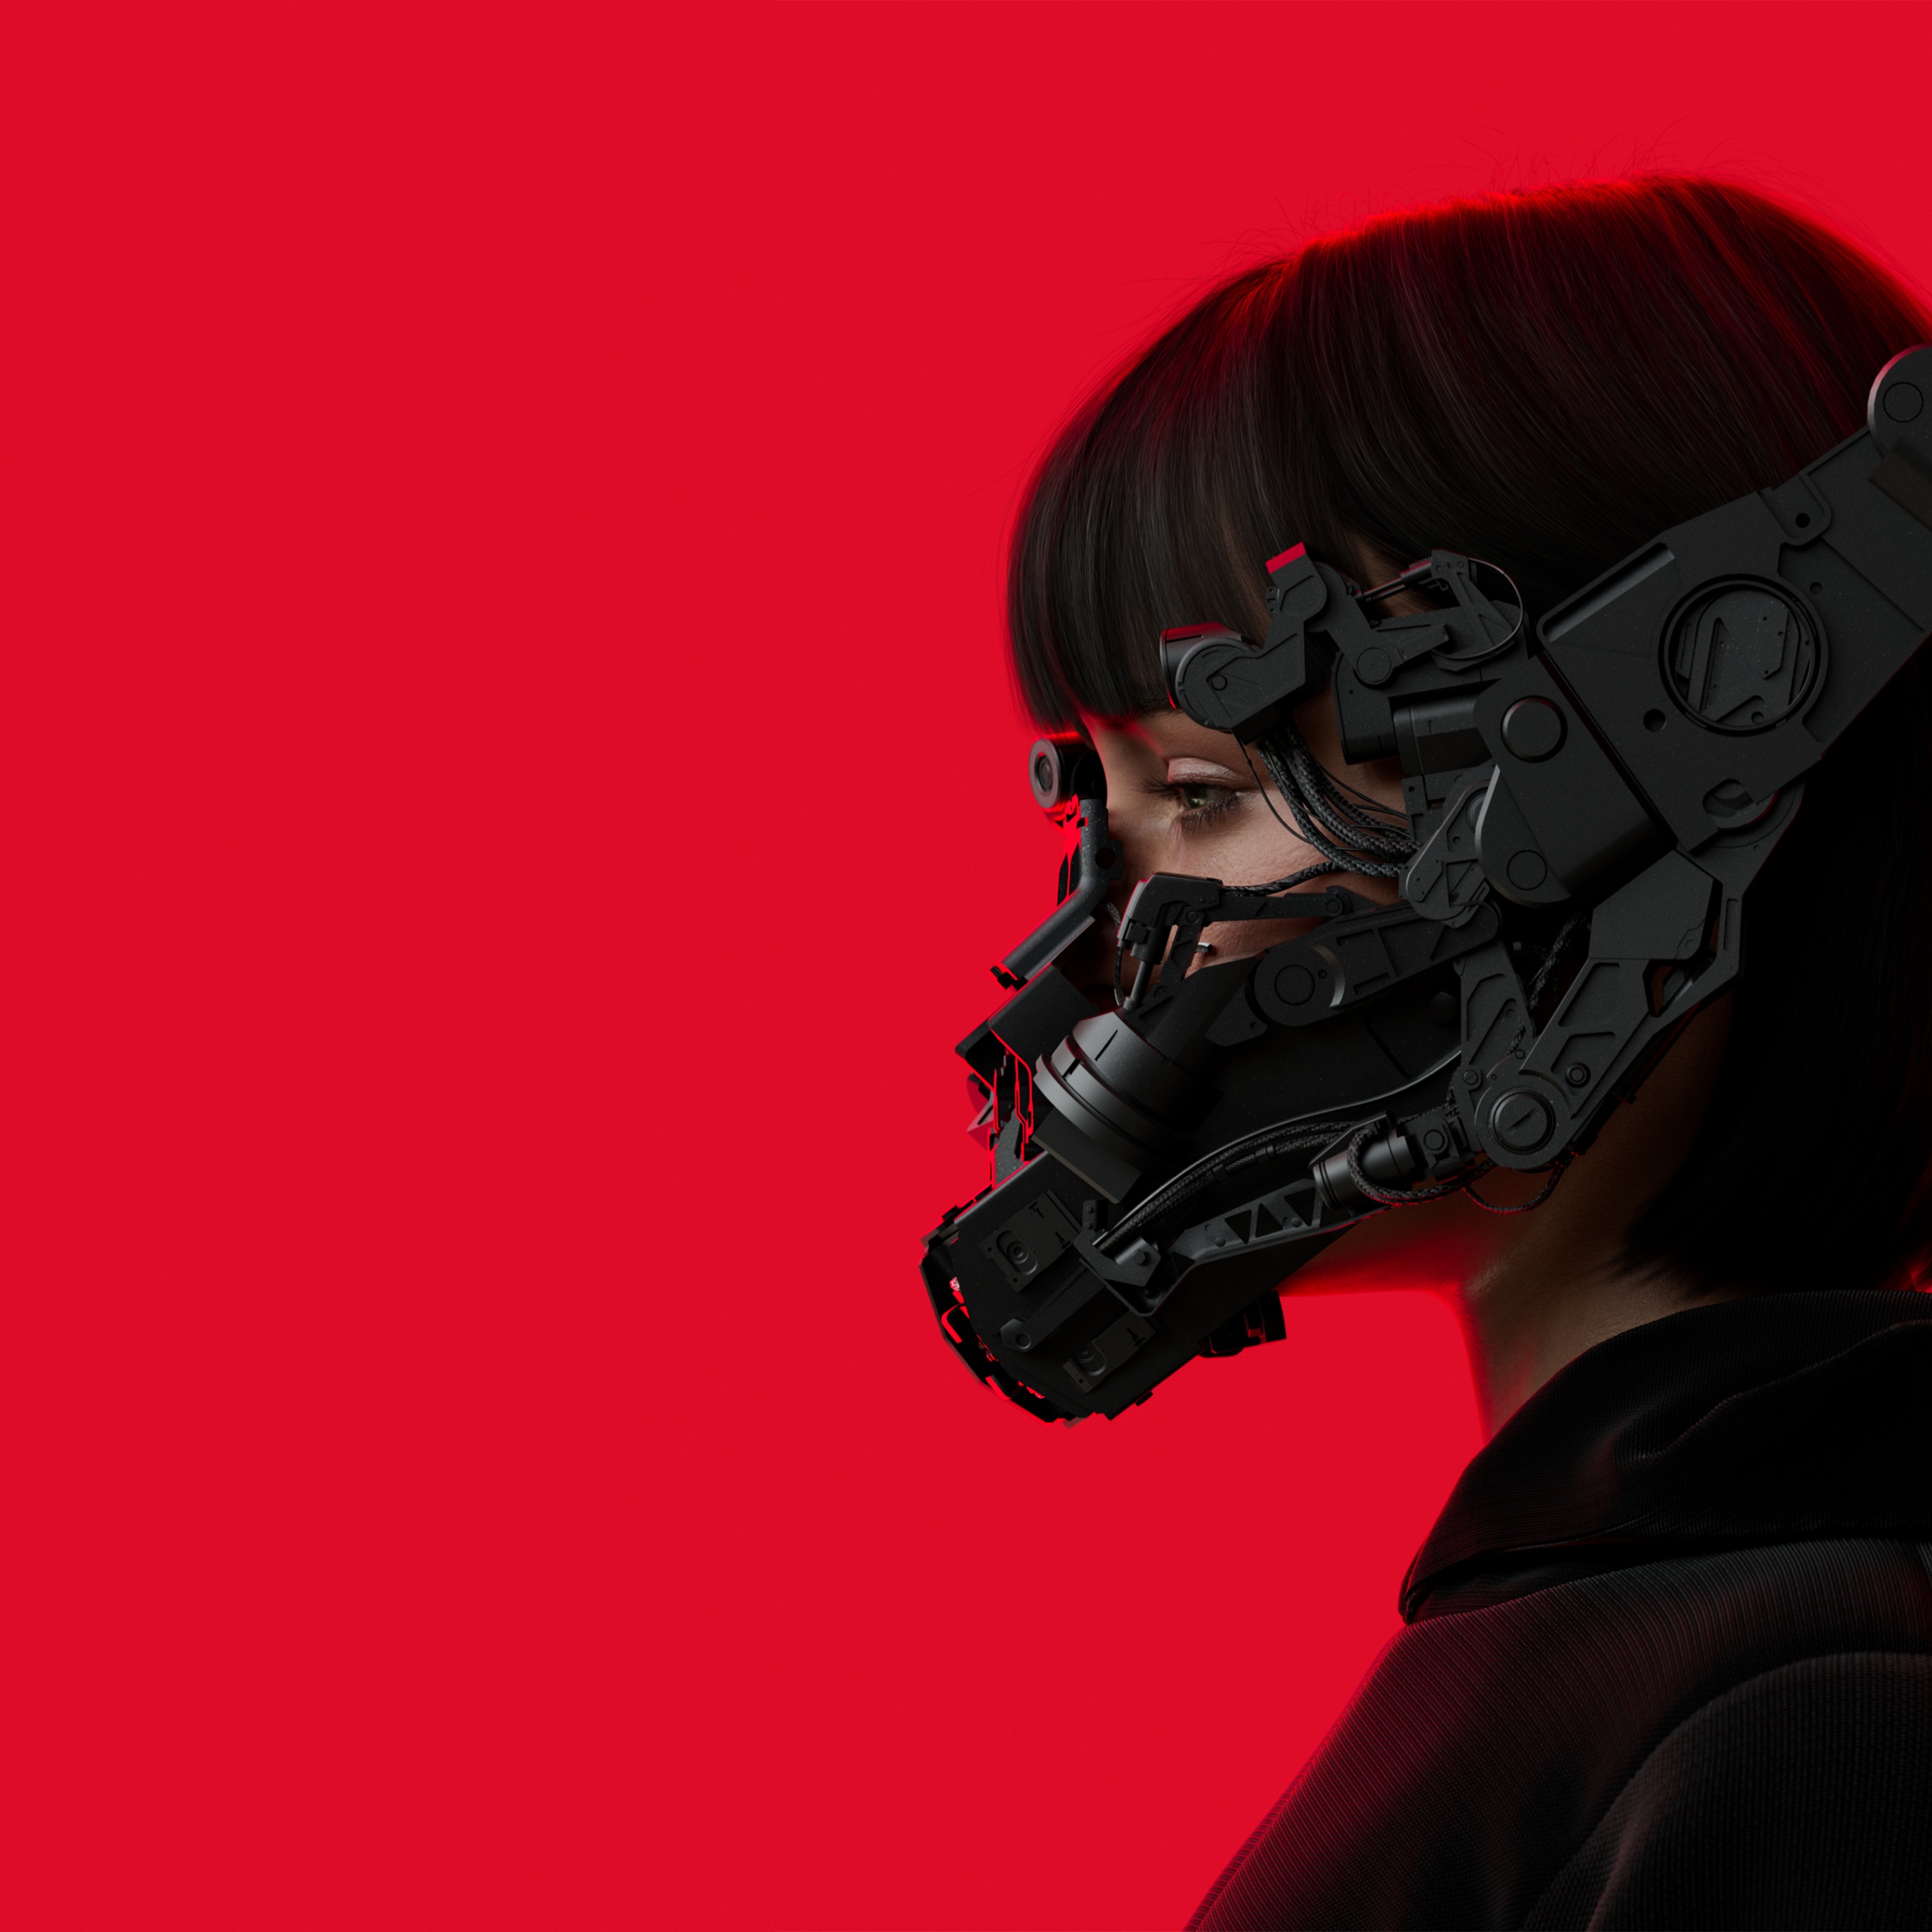 Cyberpunk hình nền 4K, nền đỏ, cô gái, khoa học viễn tưởng mang đến cho bạn một thế giới đầy khám phá và kỳ diệu. Hãy cùng nhìn ngắm và thưởng thức những cảnh quan ngoạn mục tại hình ảnh này.